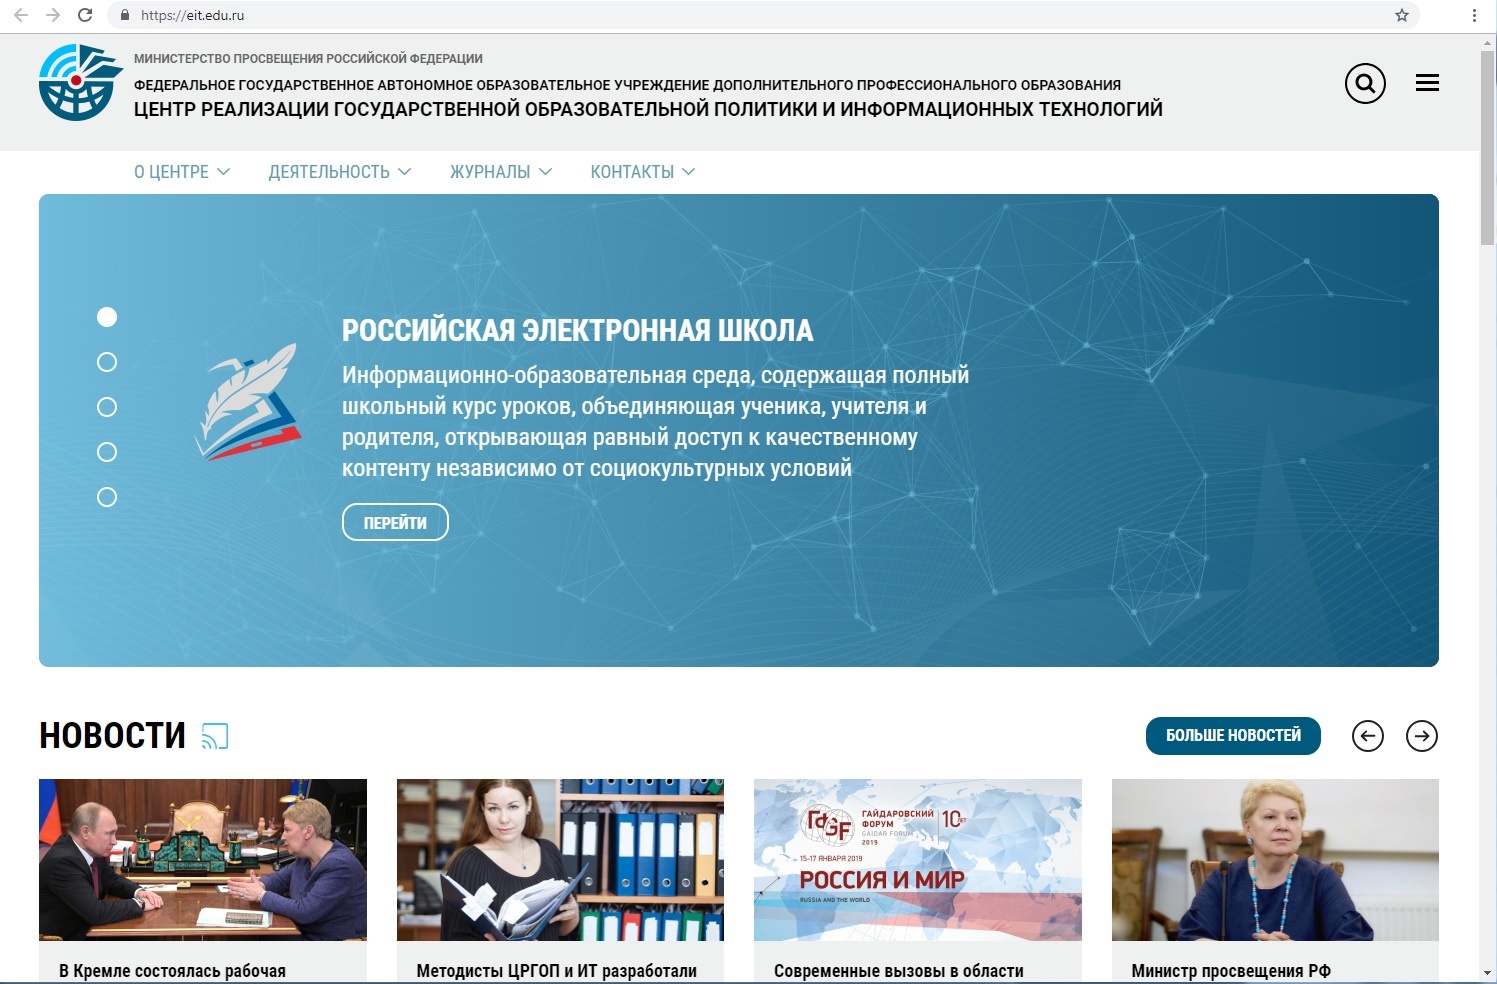 Центр реализации государственной образовательной политики и информационных технологий Минпросвещения России запустил новый сайт